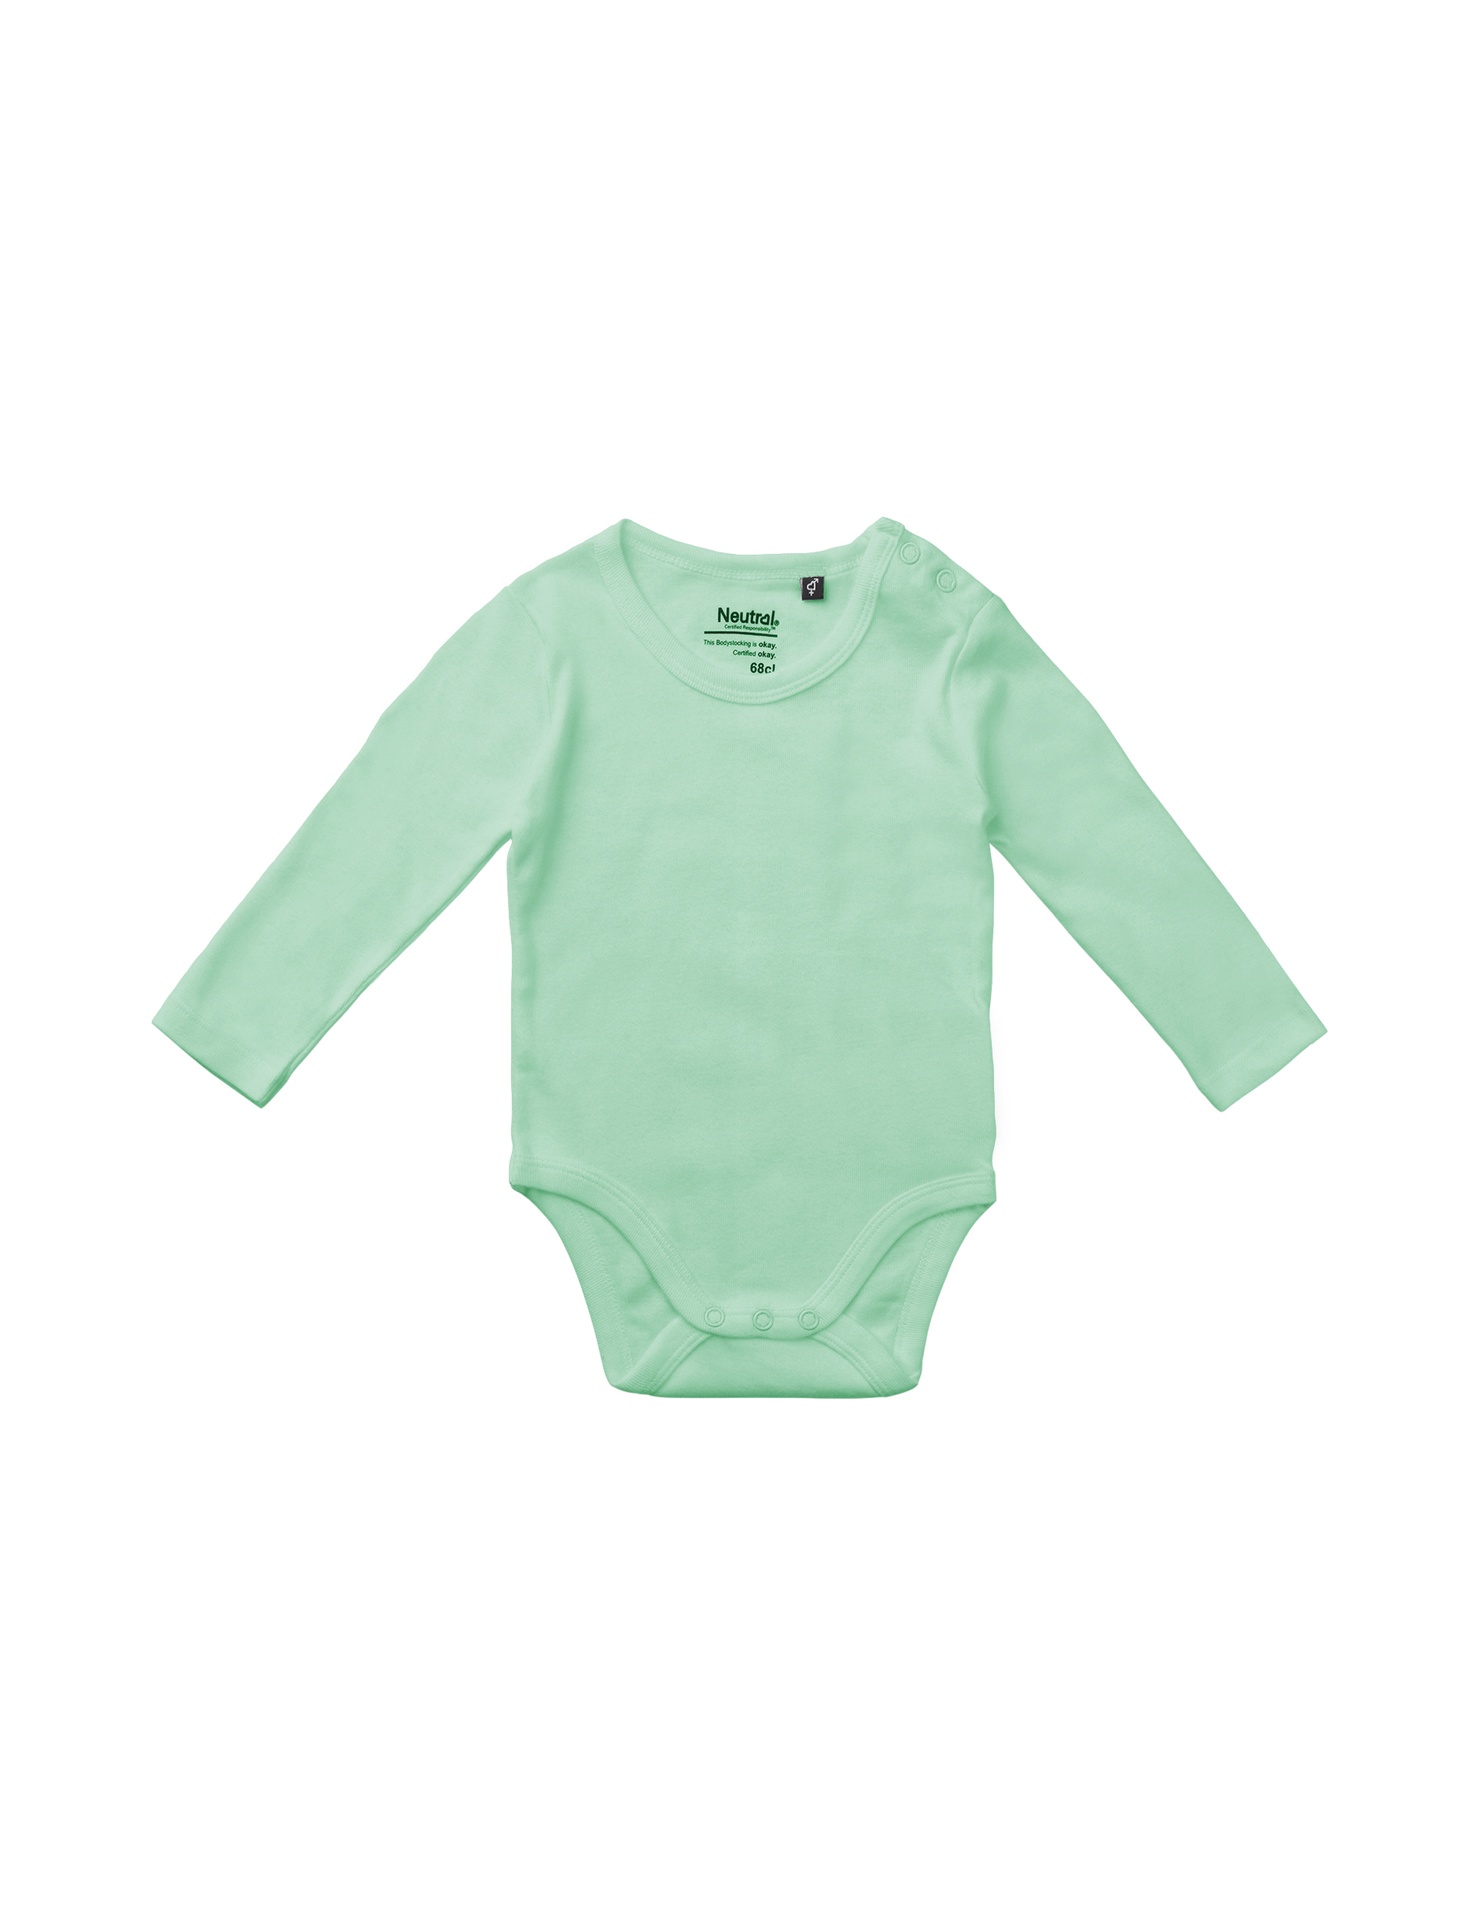 [PR/05737] Babies Long Sleeve Bodystocking (Dusty Mint 40, 62 cm)